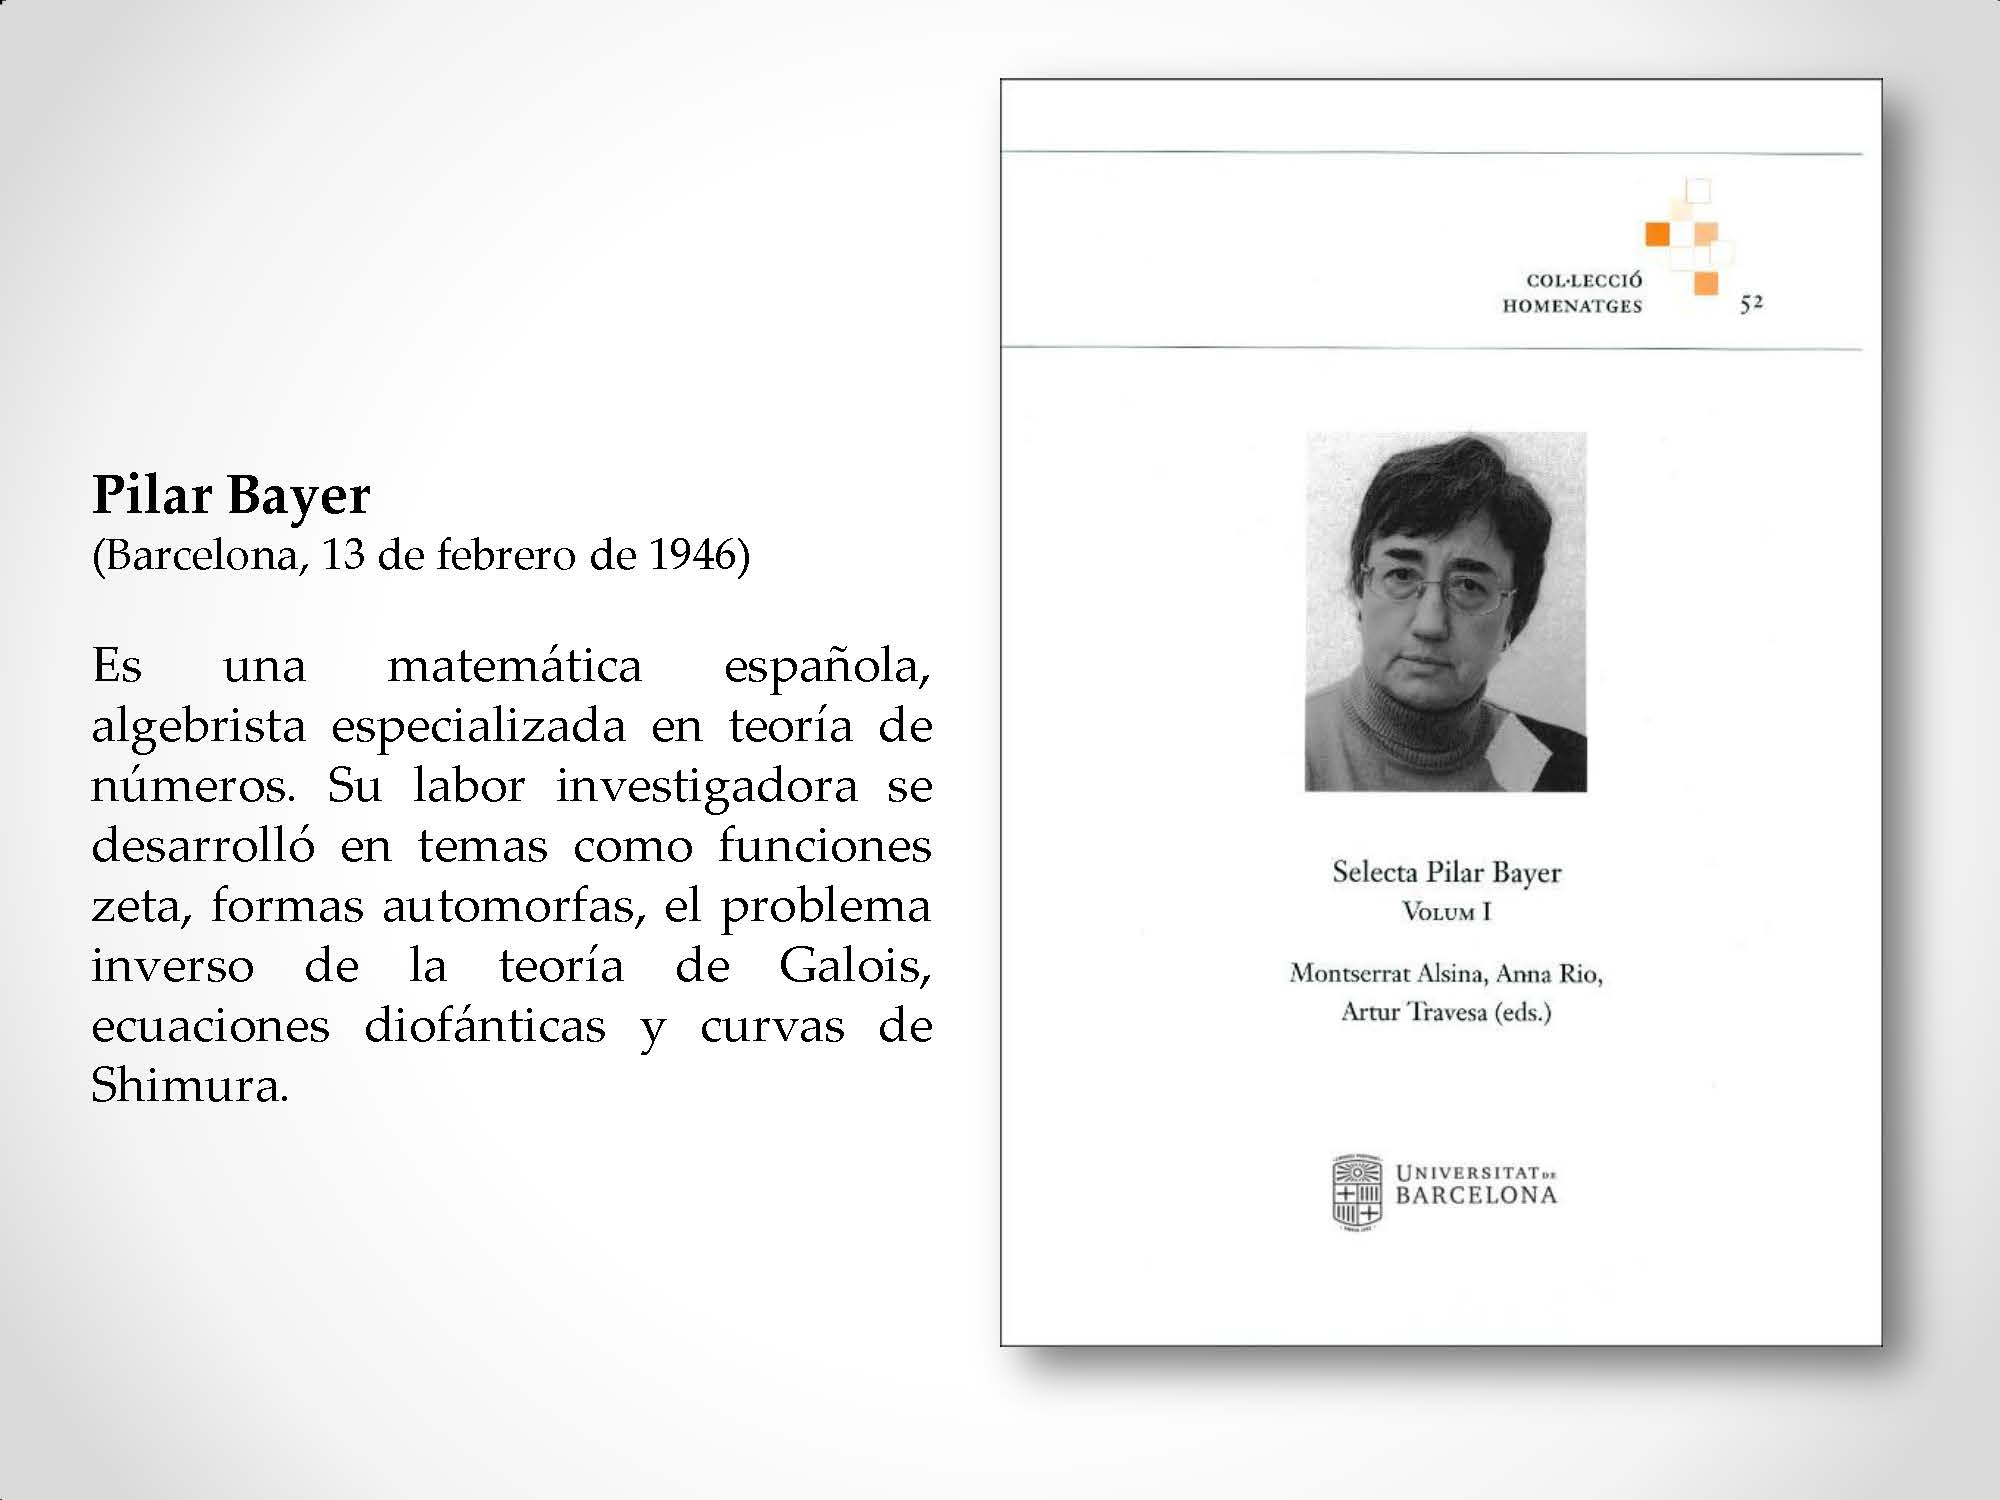 Pilar Bayer (Barcelona, 13 de febrero de 1946) Es una matemática española, algebrista especializada en teoría de números. Su labor investigadora se desarrolló en temas como funciones zeta, formas automorfas, el problema inverso de la teoría de Galois, ecuaciones diofánticas y curvas de Shimura.